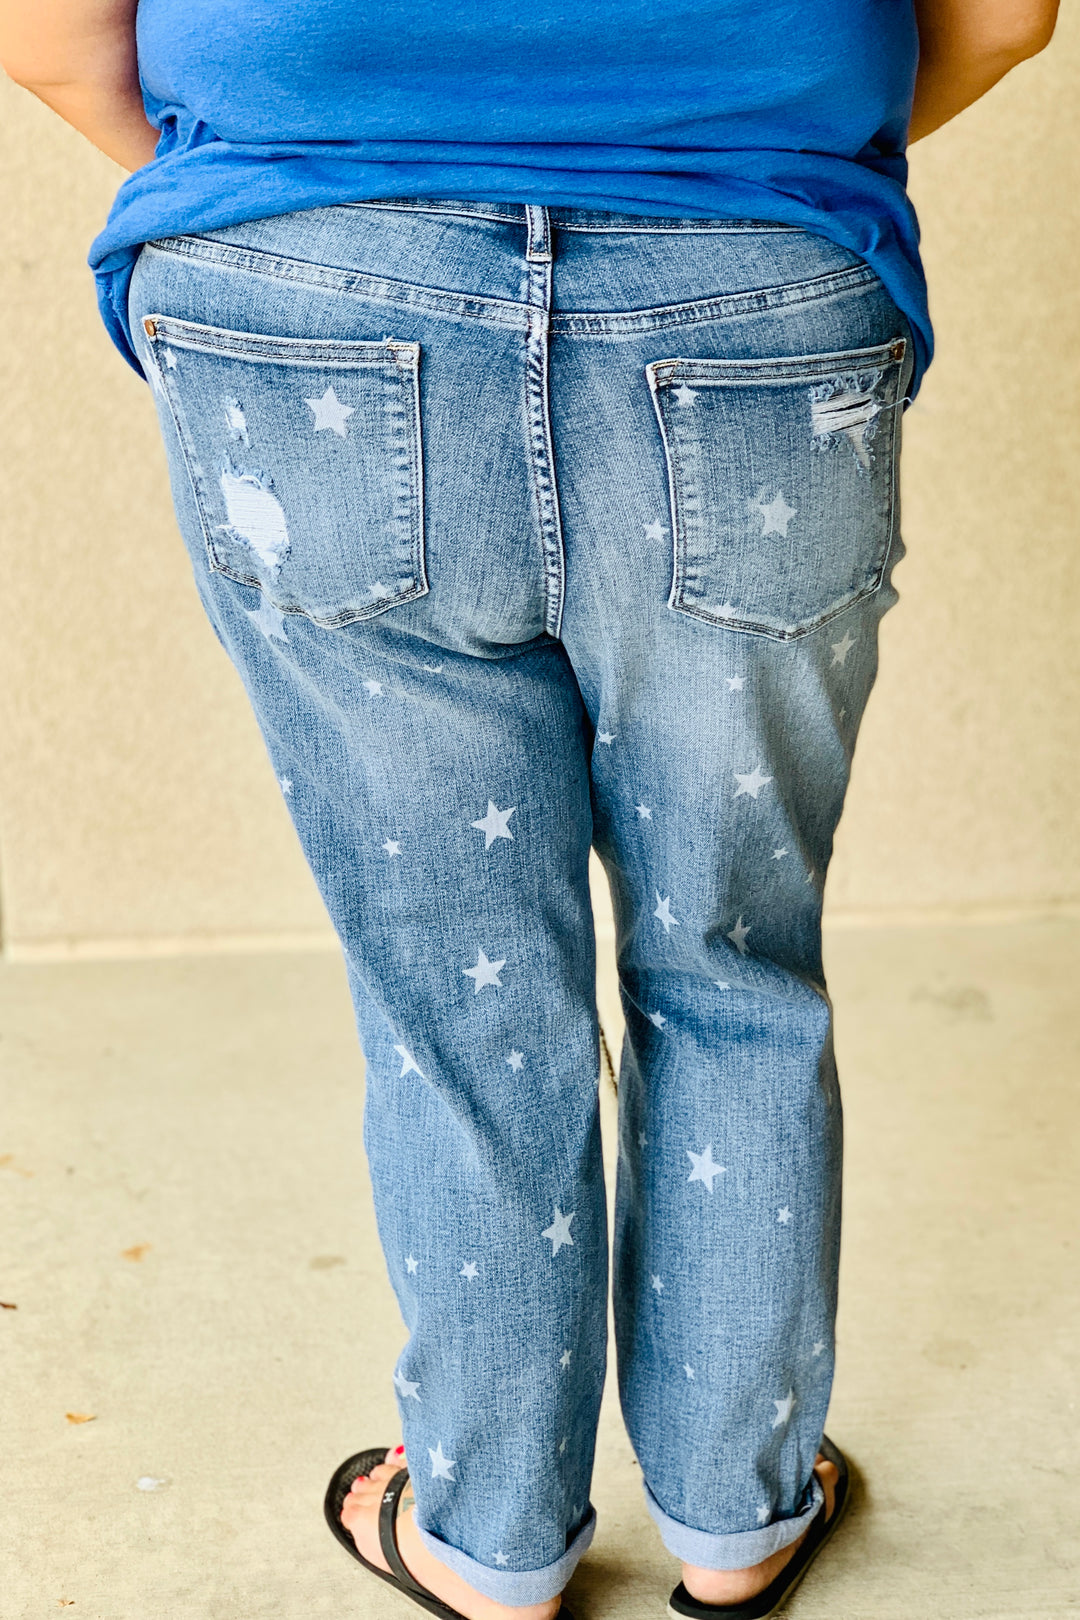 Star Crossed Boyfriend Jeans by Judy Blue